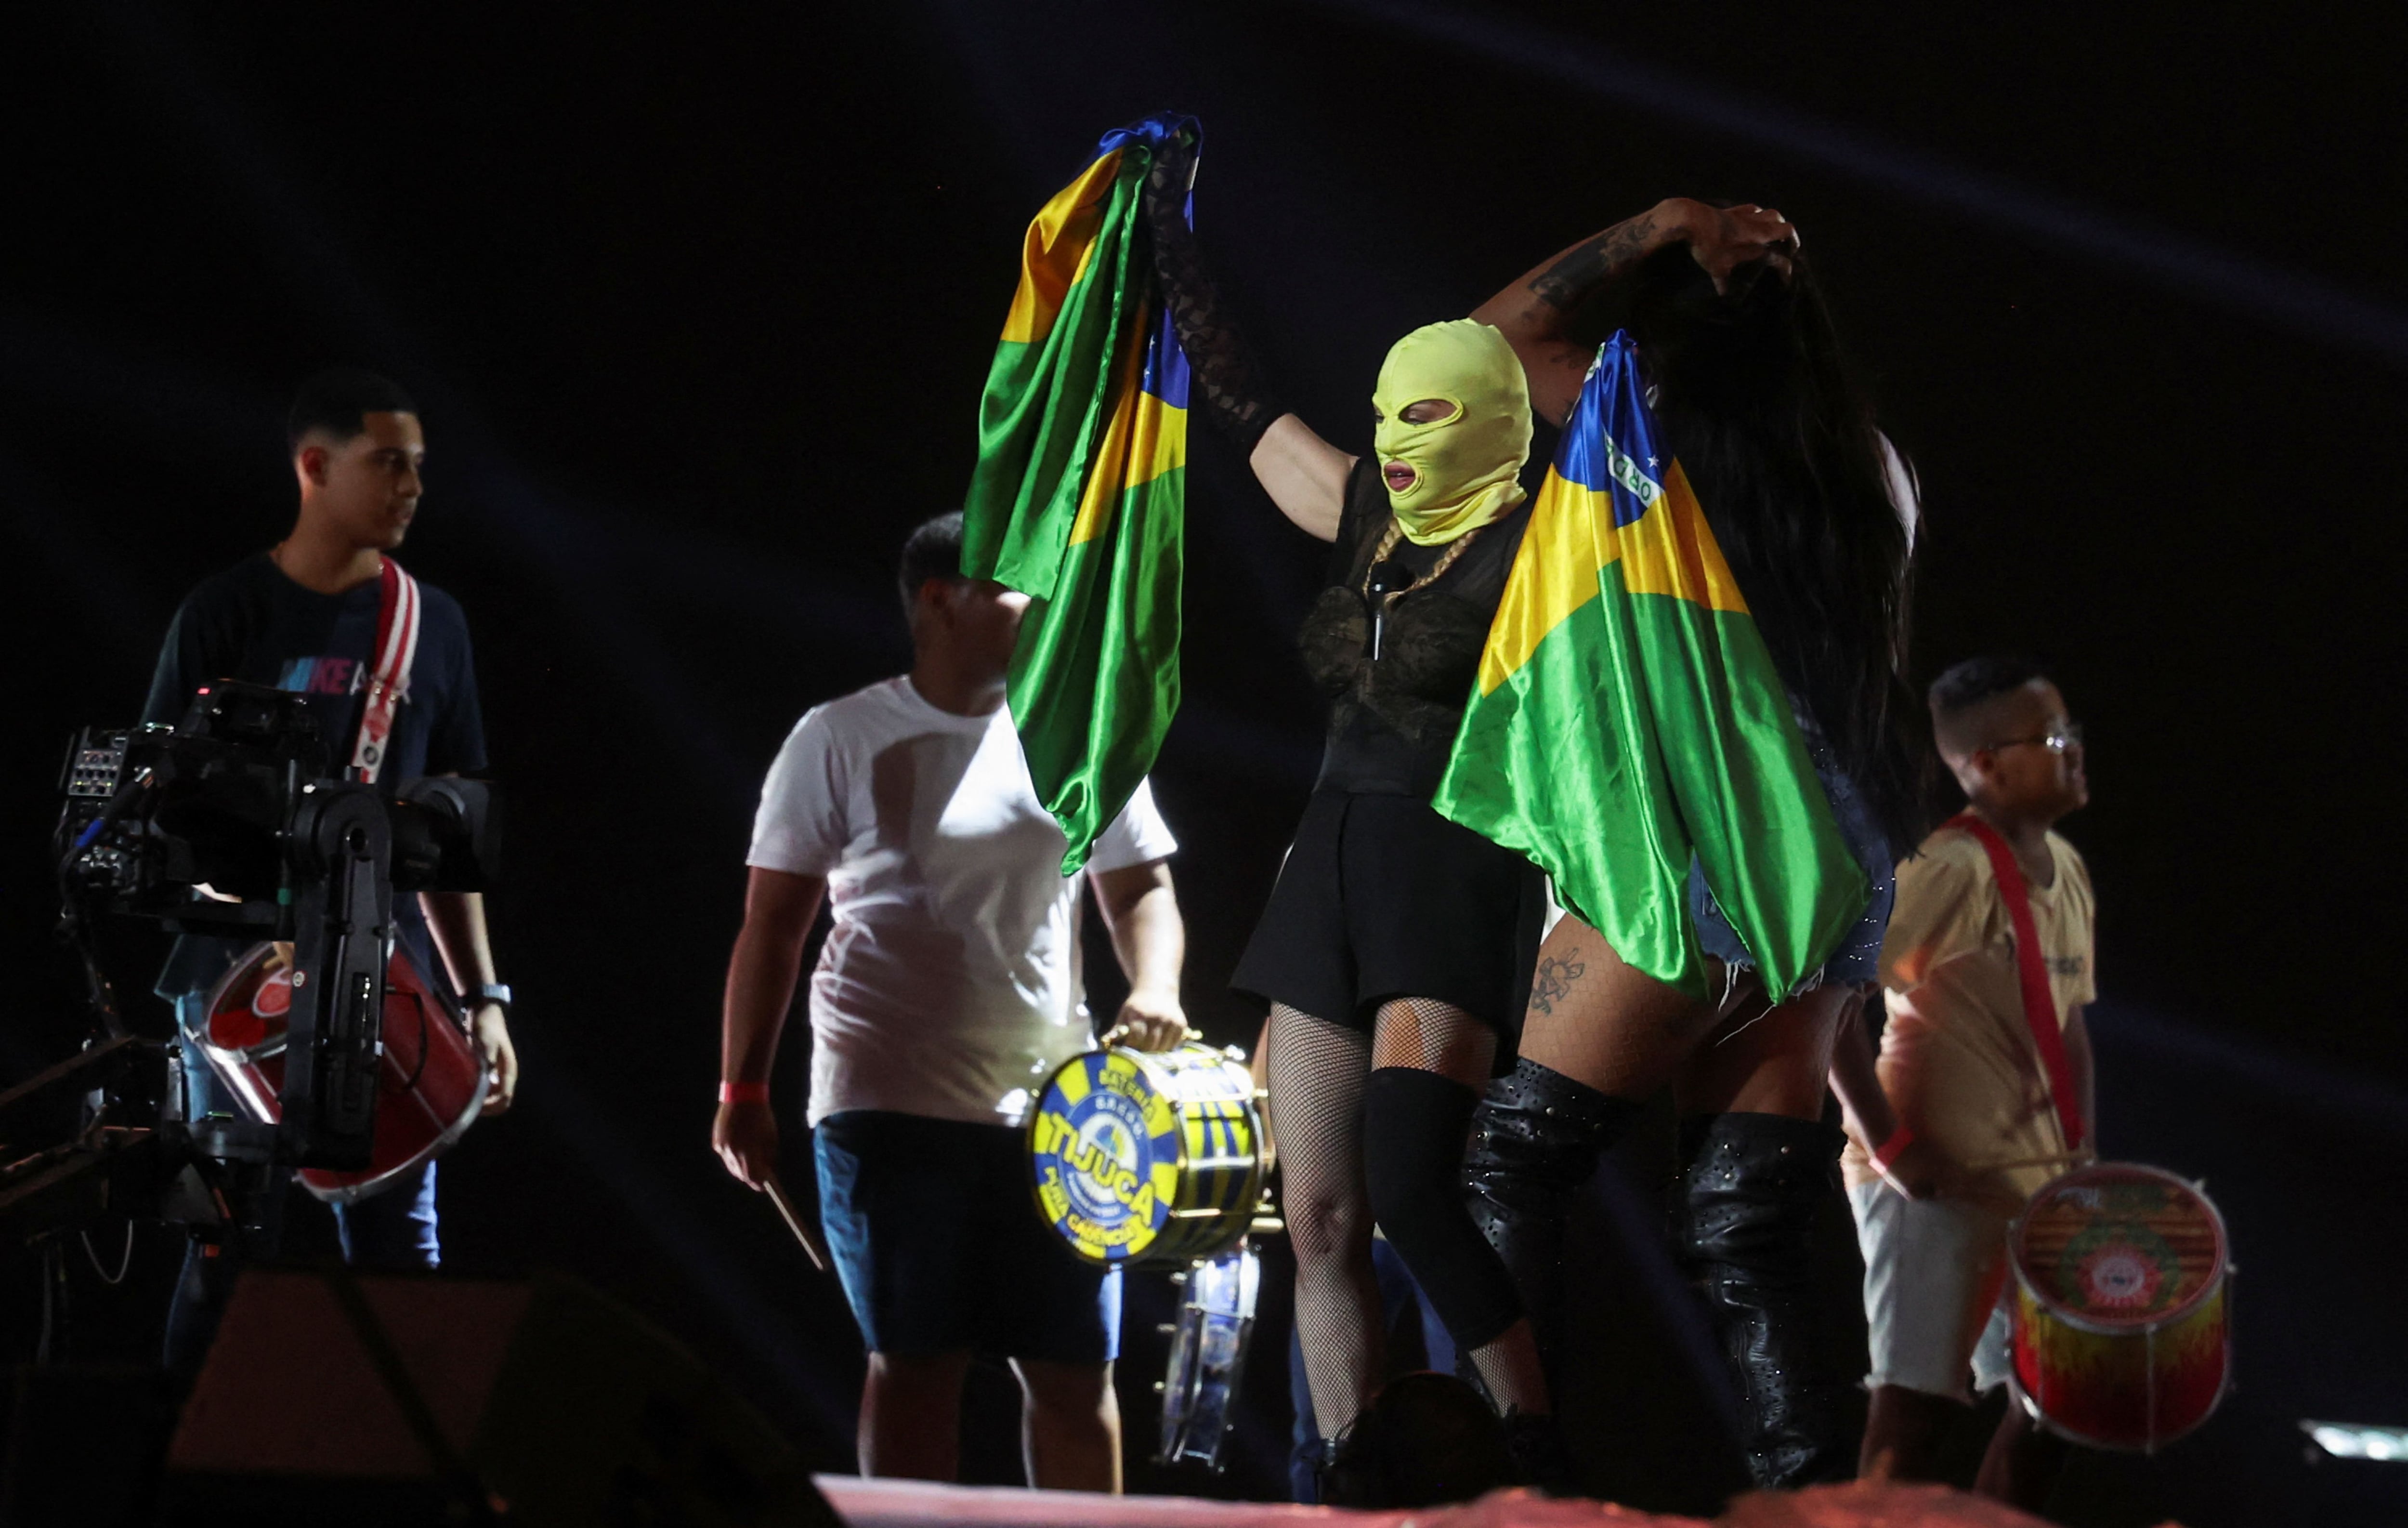 A horas de su mítico concierto en la playa de Copacabana, Madonna habría ensayado de madrugada, oculta bajo una máscara y con una rodillera, sosteniendo banderas brasileñas (Foto/REUTERS/Pilar Olivares)